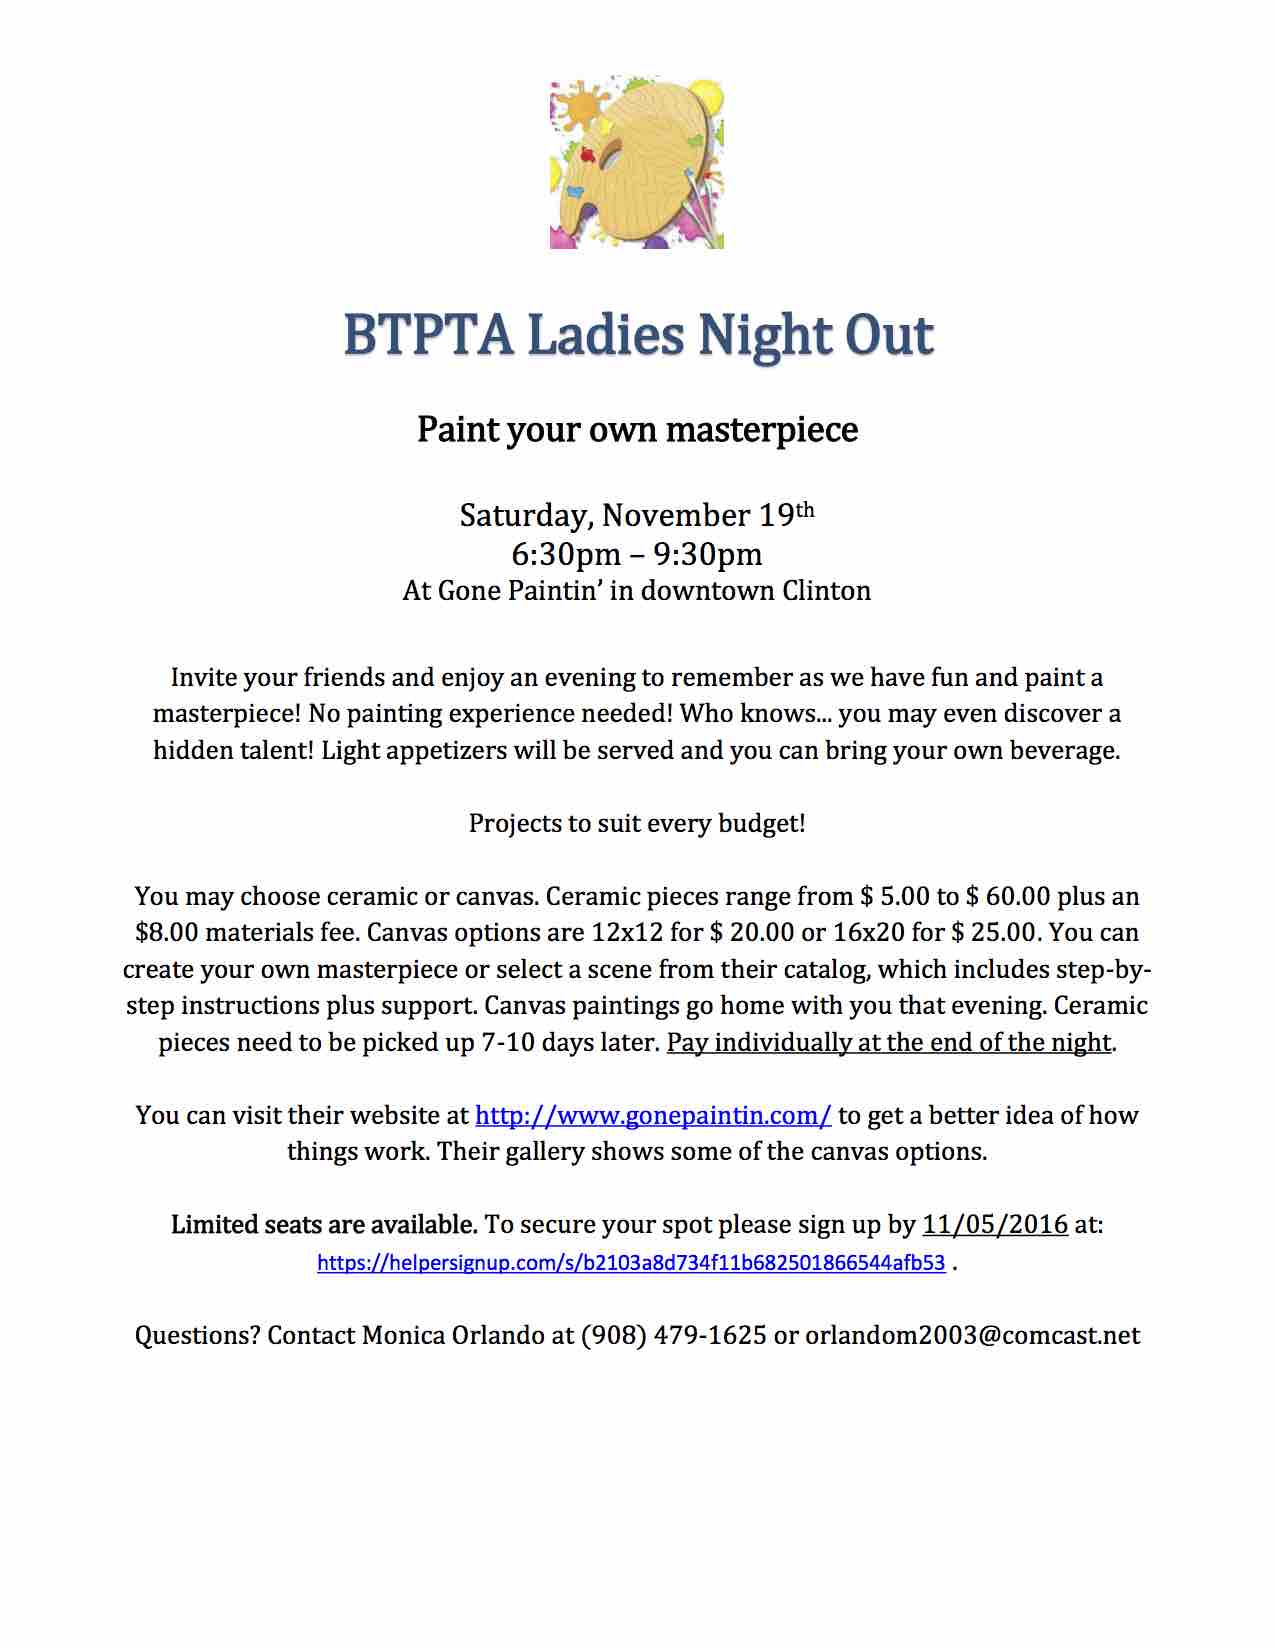 btpta-ladies-night-out-2016